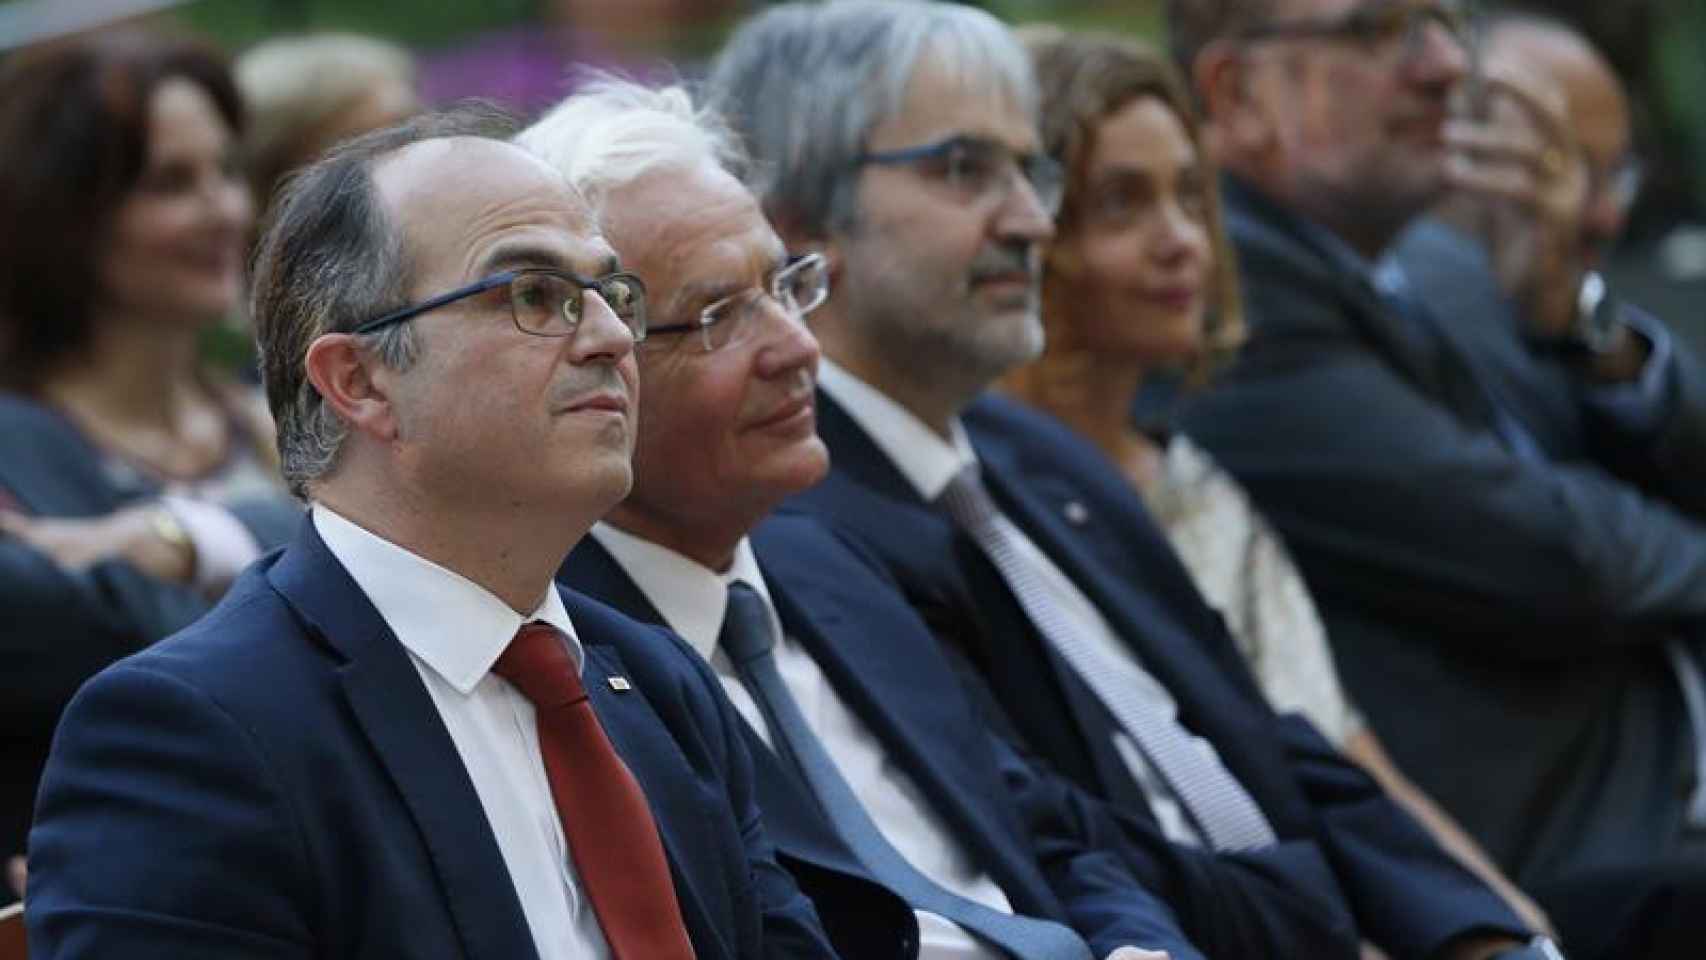 El conseller de Presidencia y portavoz de la Generalitat, Jordi Turull, junto al secretario general de Presidencia, Joaquim Nin, preside los actos conmemorativos de la Diada en Madrid